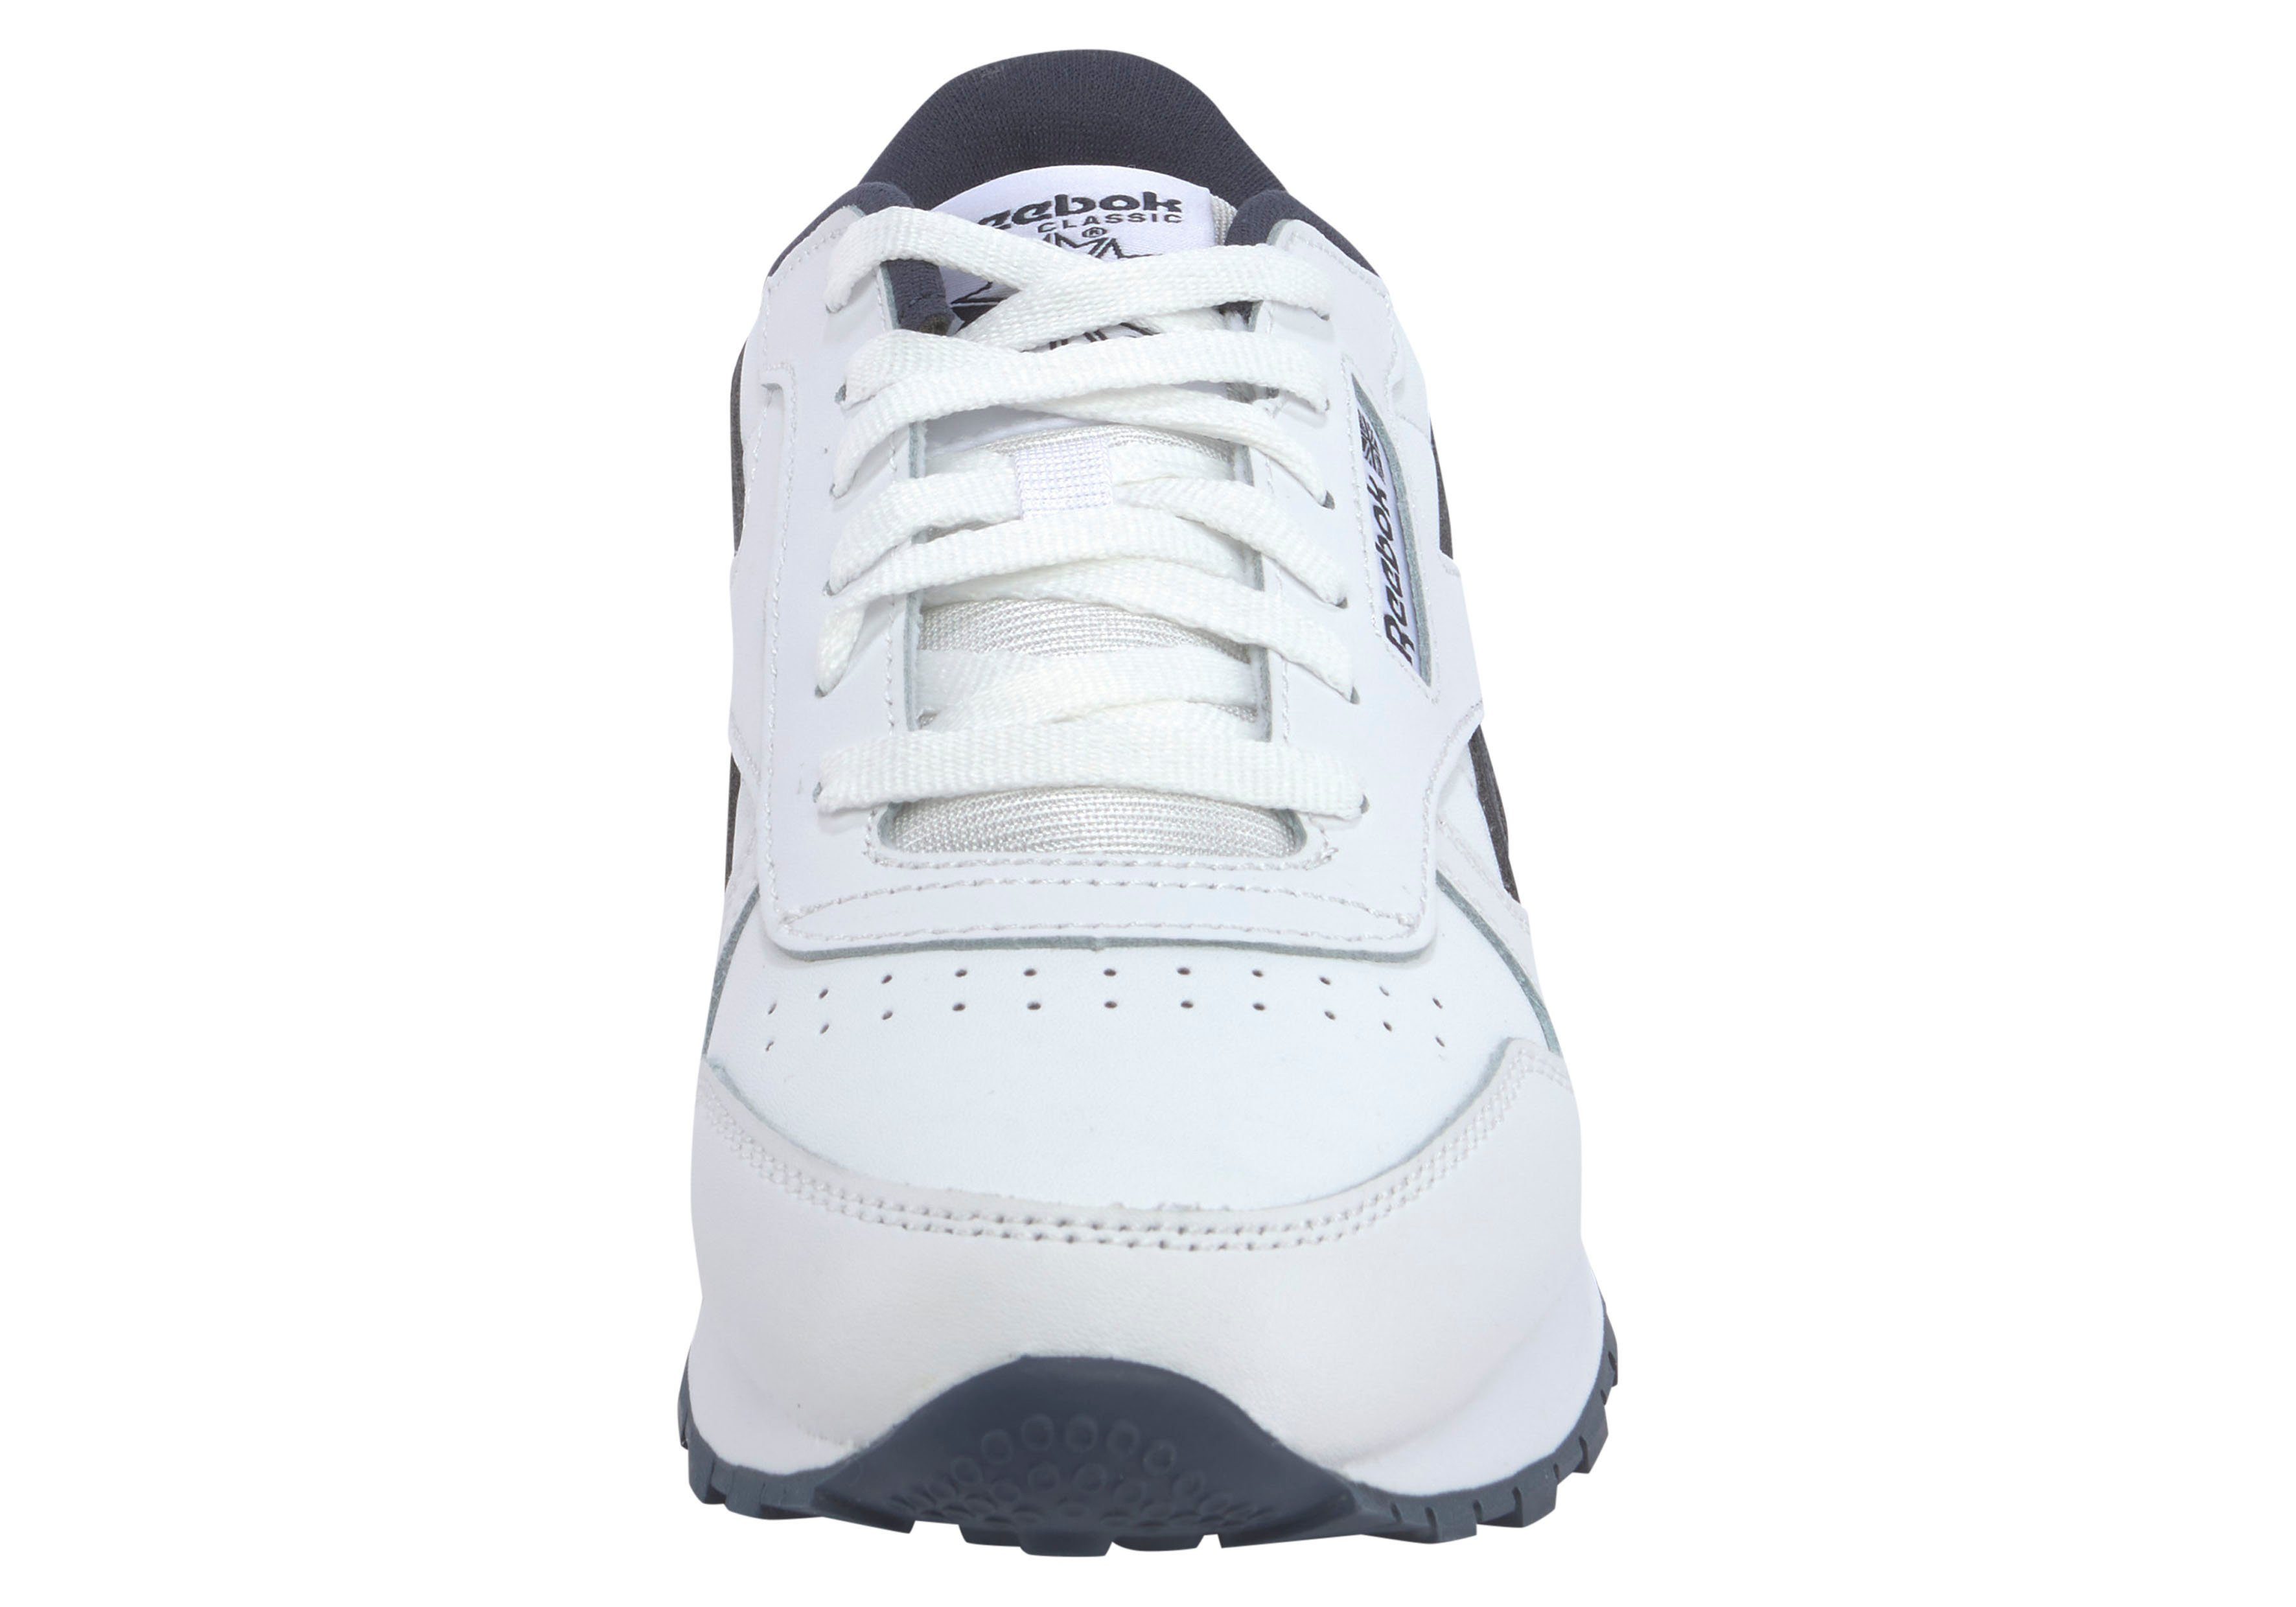 Reebok Classic weiß-schwarz Sneaker LEATHER CLASSIC